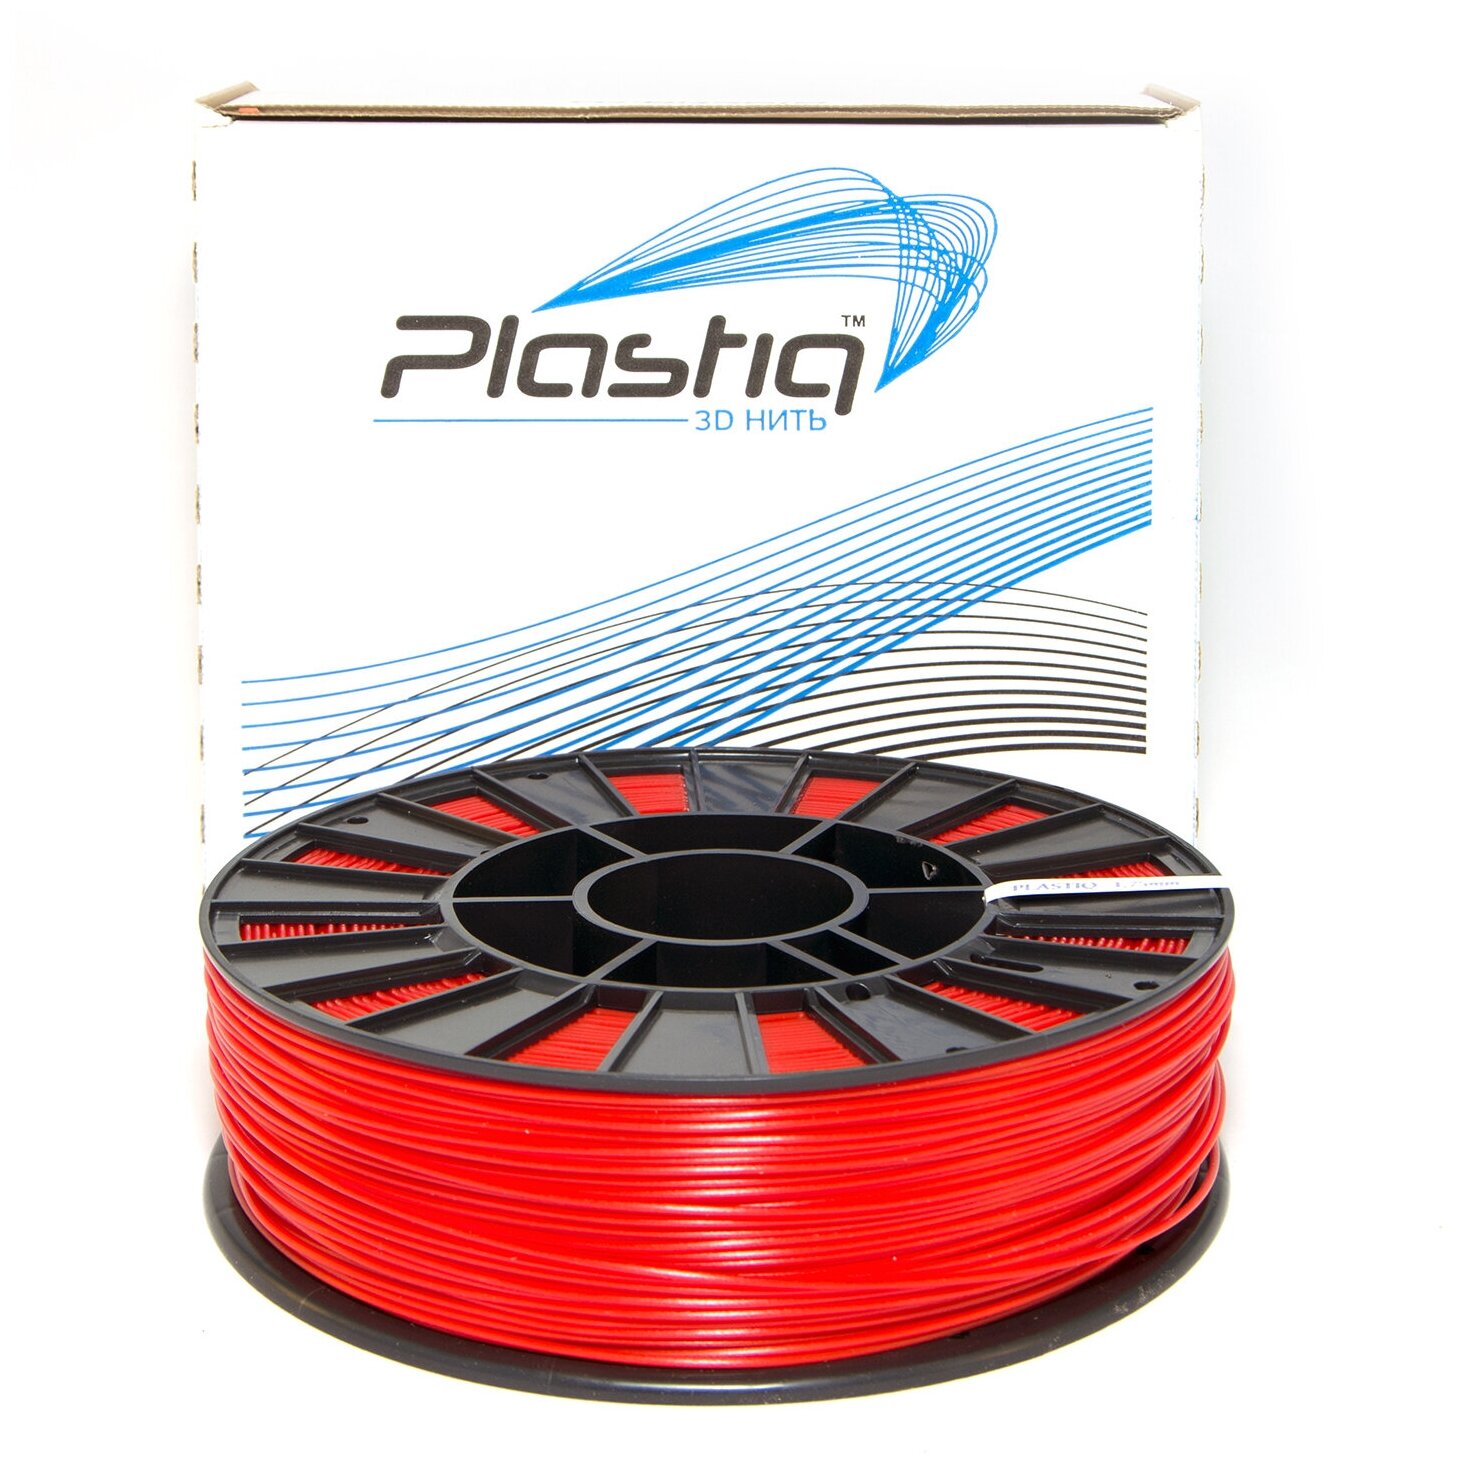 Пластик PLA для 3D принтера красный Plastiq, 1.75мм, 320 метров